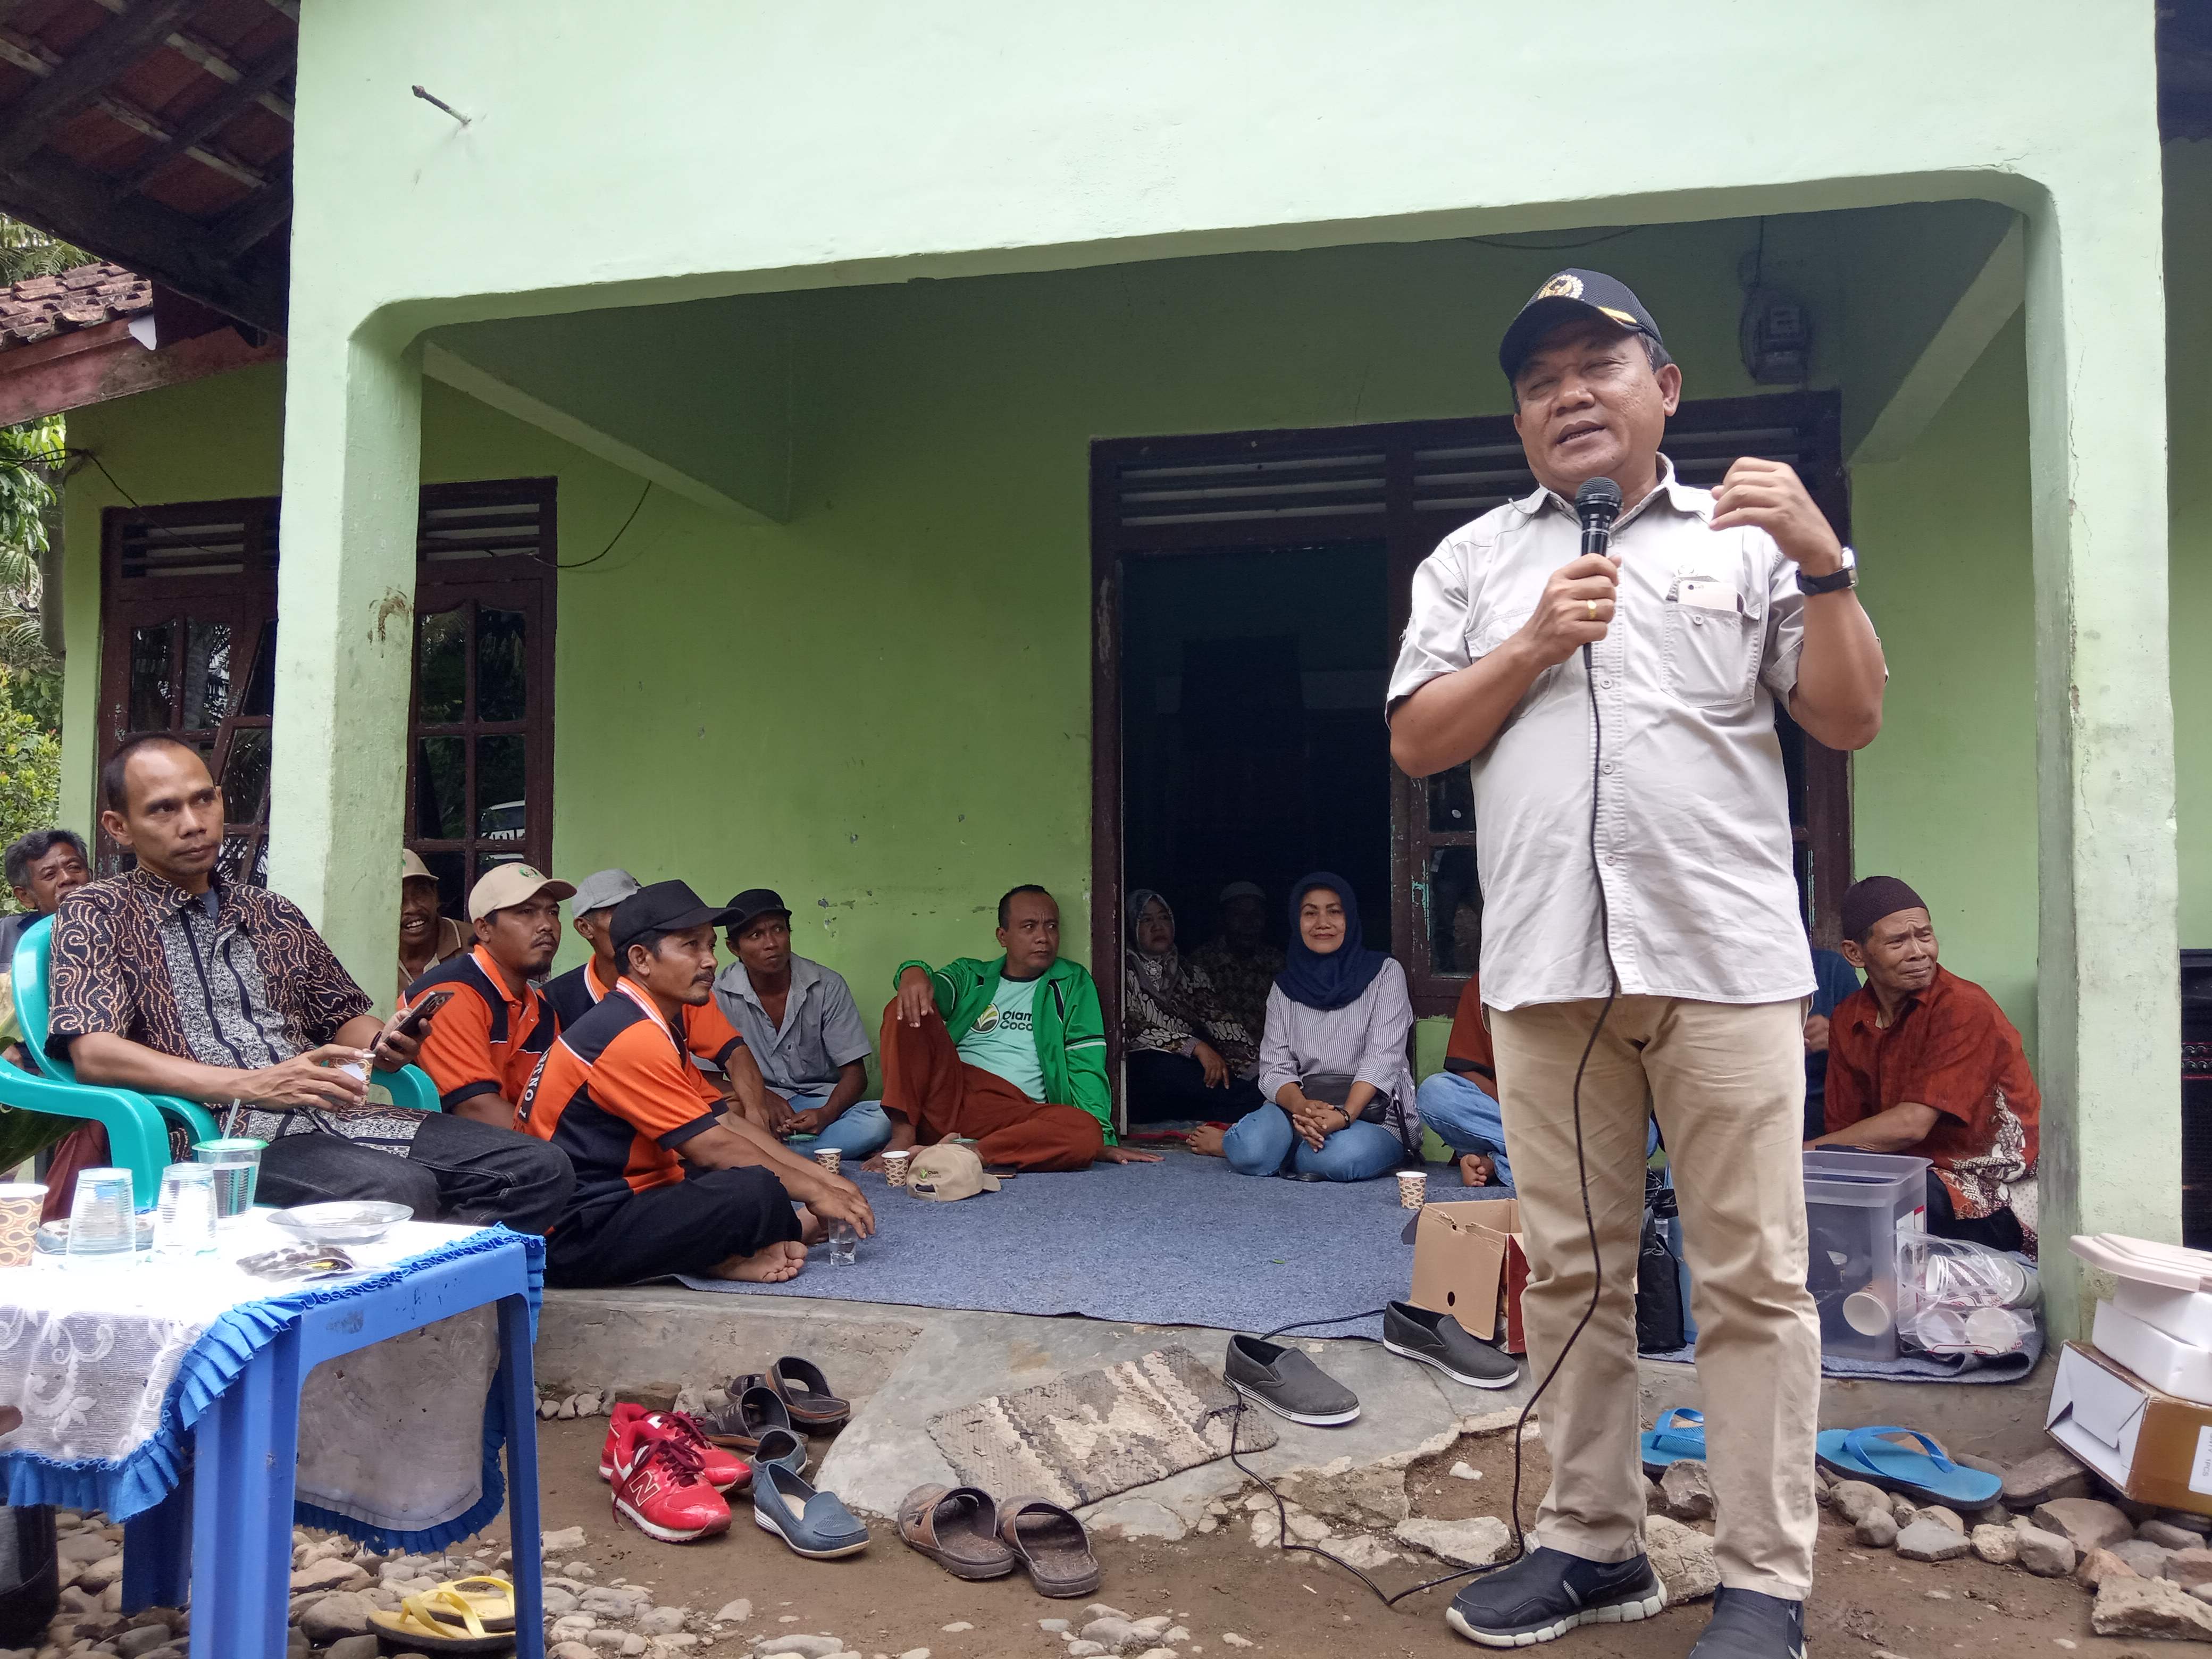 Ir Anang Prihantoro, anggota DPD RI asal Lampung yang selama ini konsen mendampingi petani saat memberikan sambutan dalam studi banding petani asal Lamteng di Tanjungrusia Timur Kecamatan Pardasuka Kabupaten Pringsewu